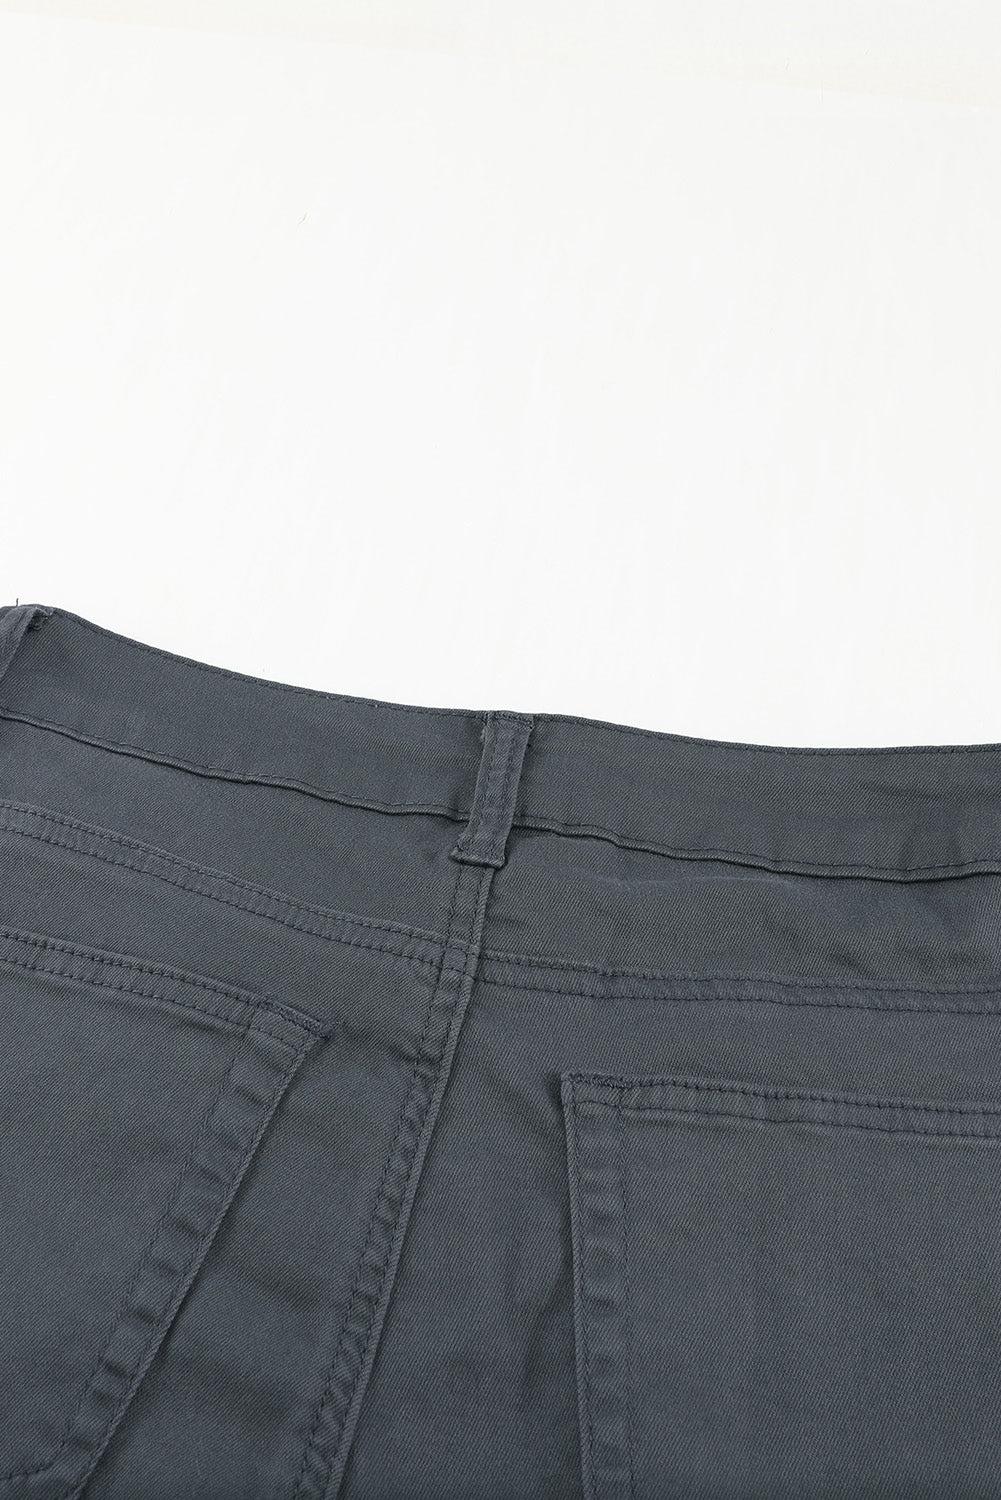 Jeans in denim corto sfilacciati con bottoni a vita alta grigi e semplici